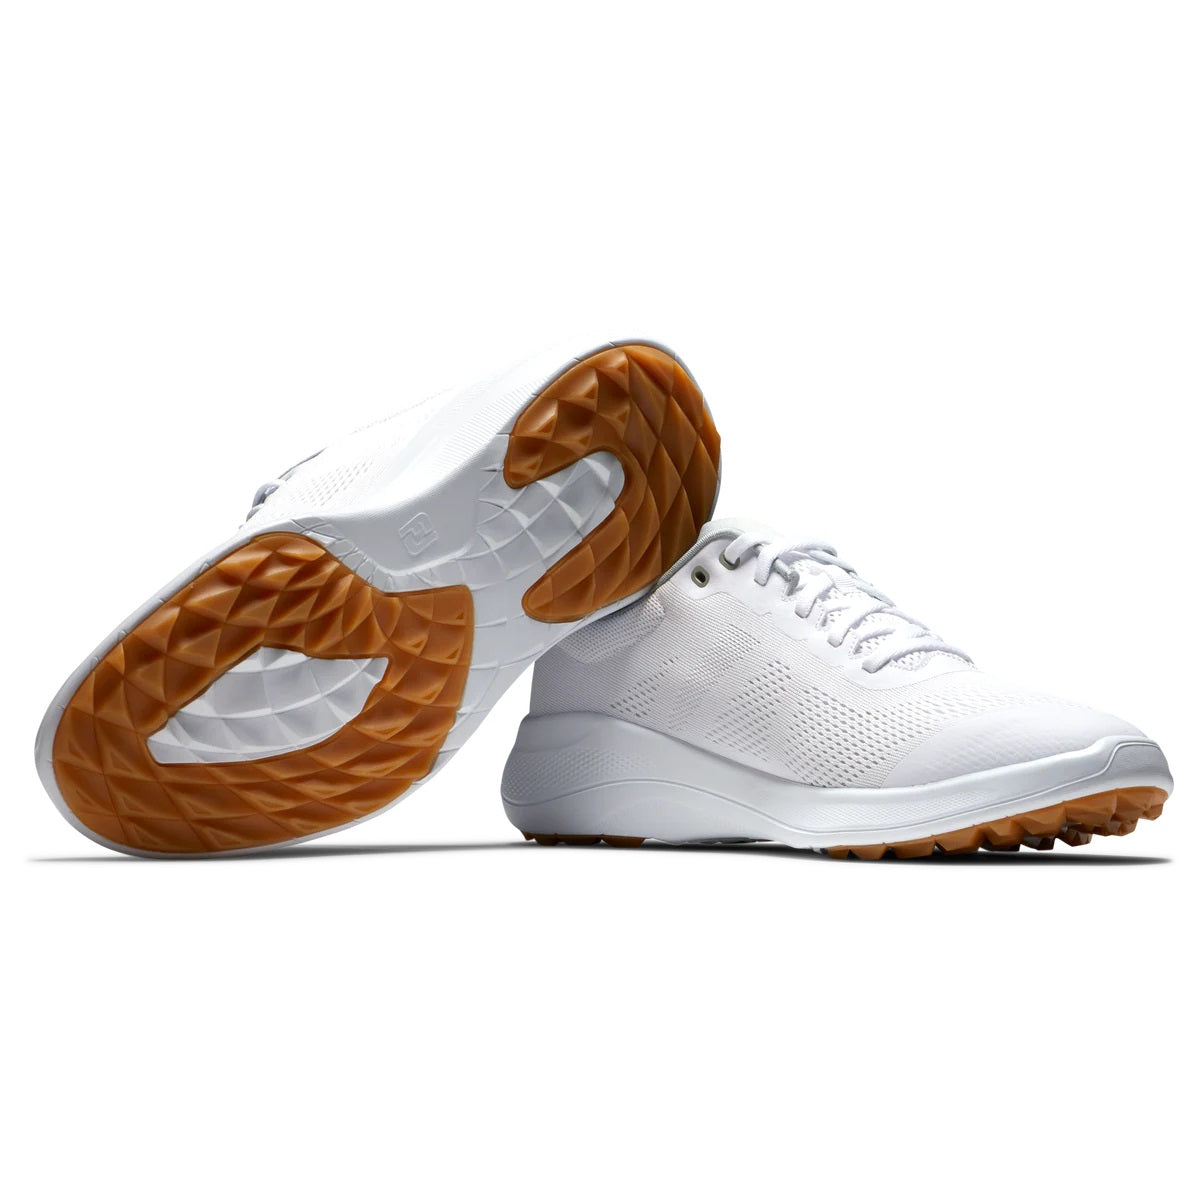 FootJoy Flex Golf Shoes White/Tan 56139 (Previous Season Style)